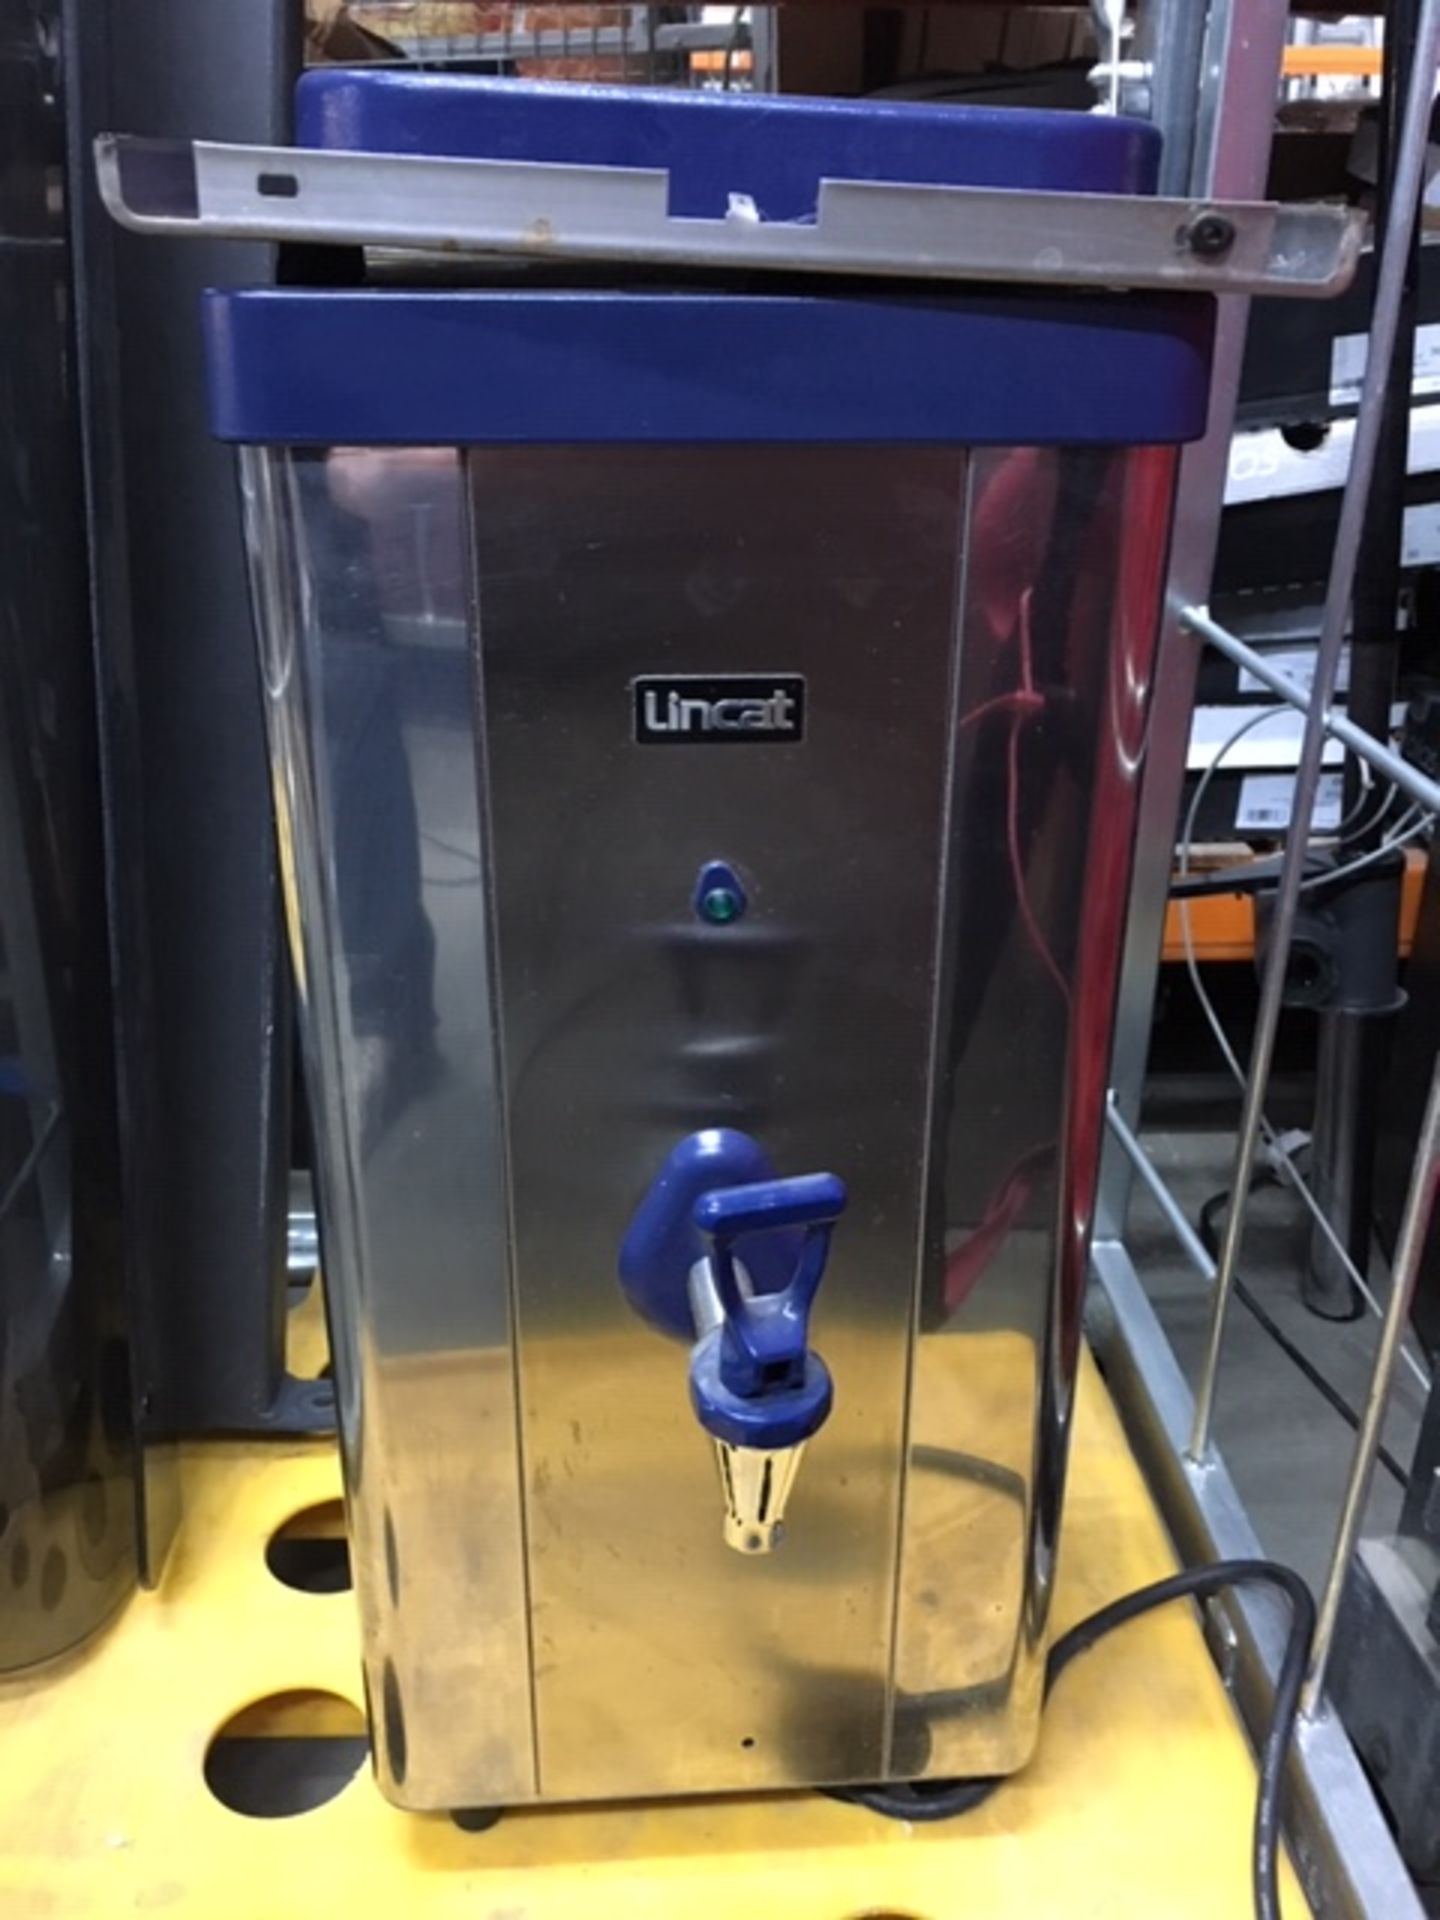 Lincat A006 Hot Water Boiler